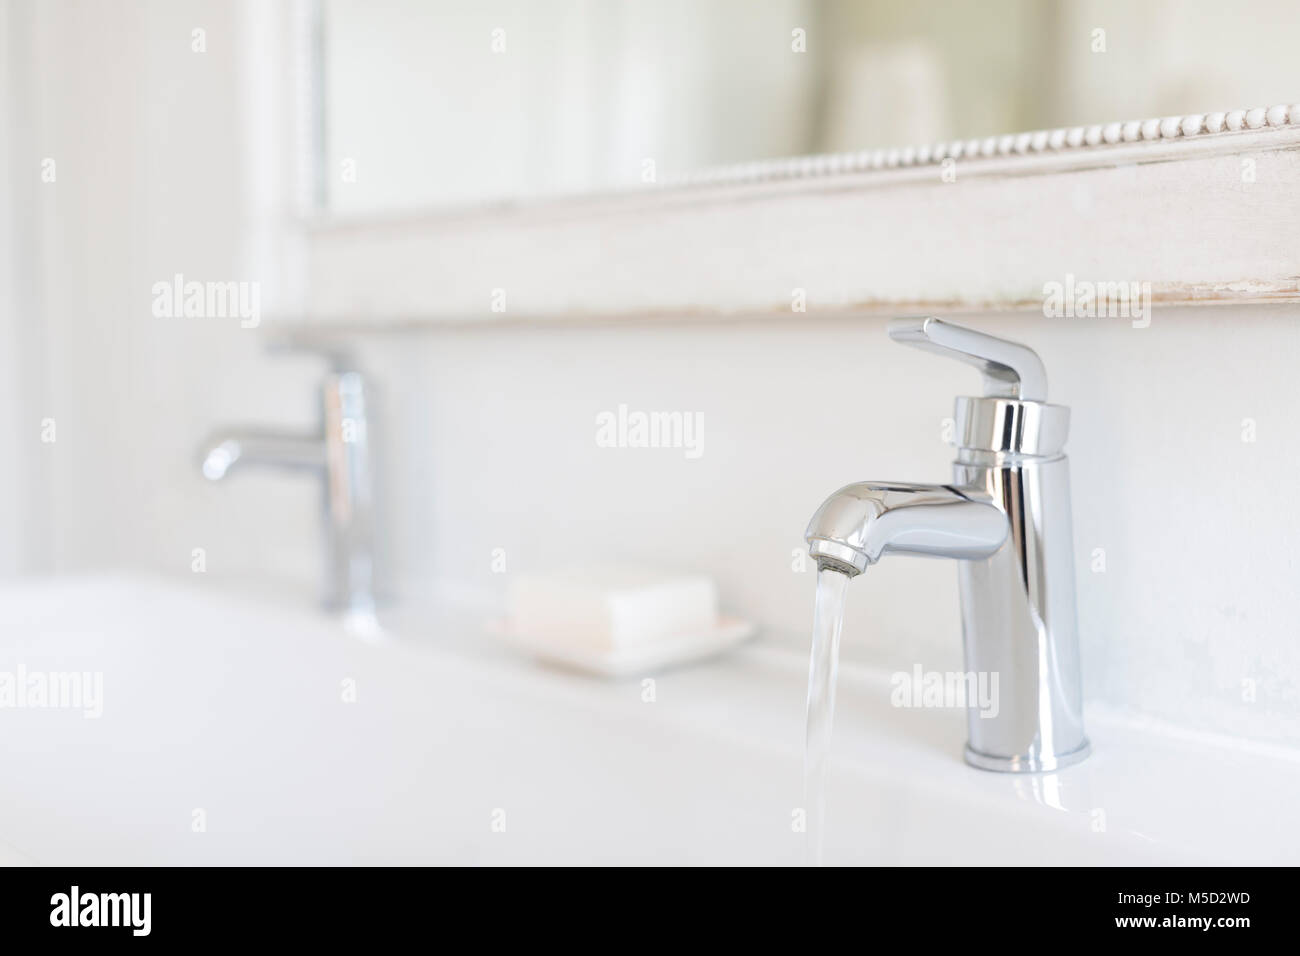 Le luxe, le robinet de salle de bain modernes en acier inoxydable Banque D'Images